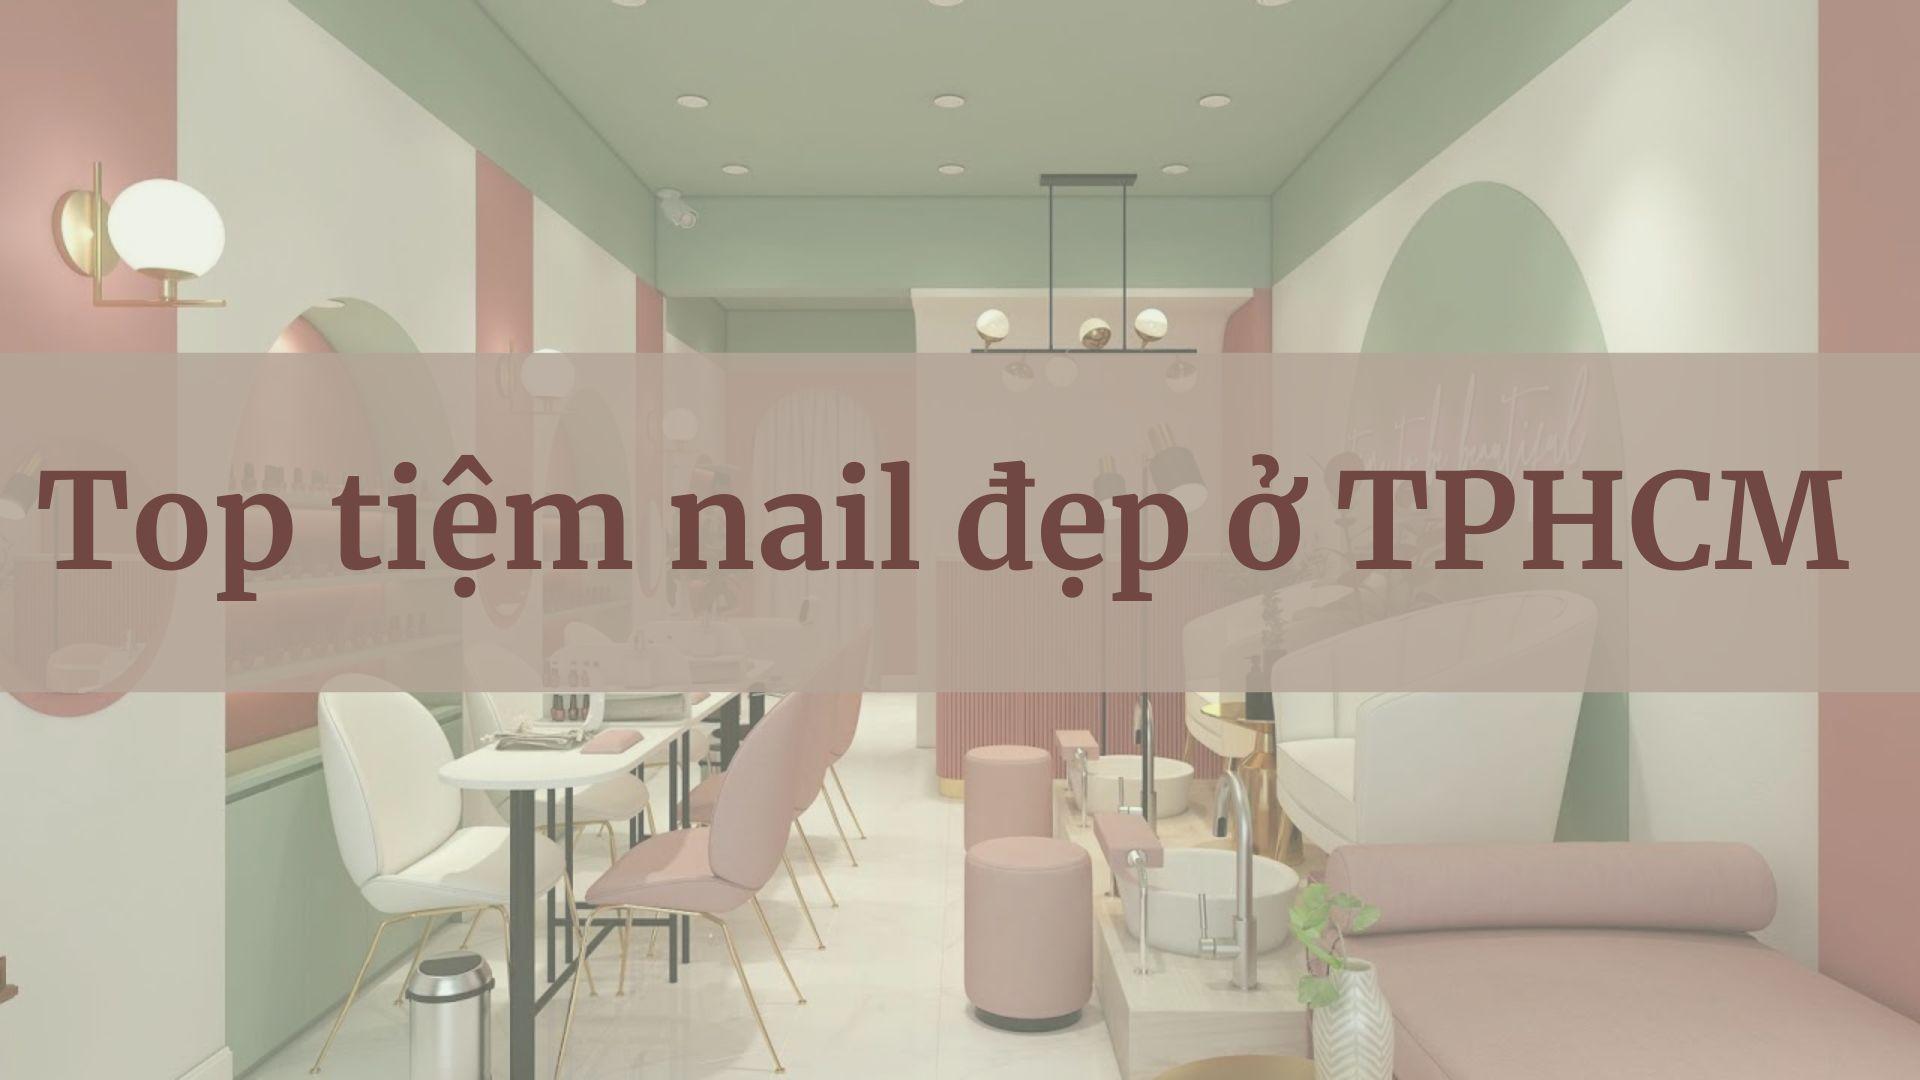 Làm Nail TP HCM: Hãy đến TP HCM để thưởng thức dịch vụ làm nail chuyên nghiệp và tuyệt vời tại các tiệm nail đẳng cấp. Với sự ngày càng tăng của giới trẻ, TP HCM đang trở thành trung tâm nail hàng đầu của Đông Nam Á.